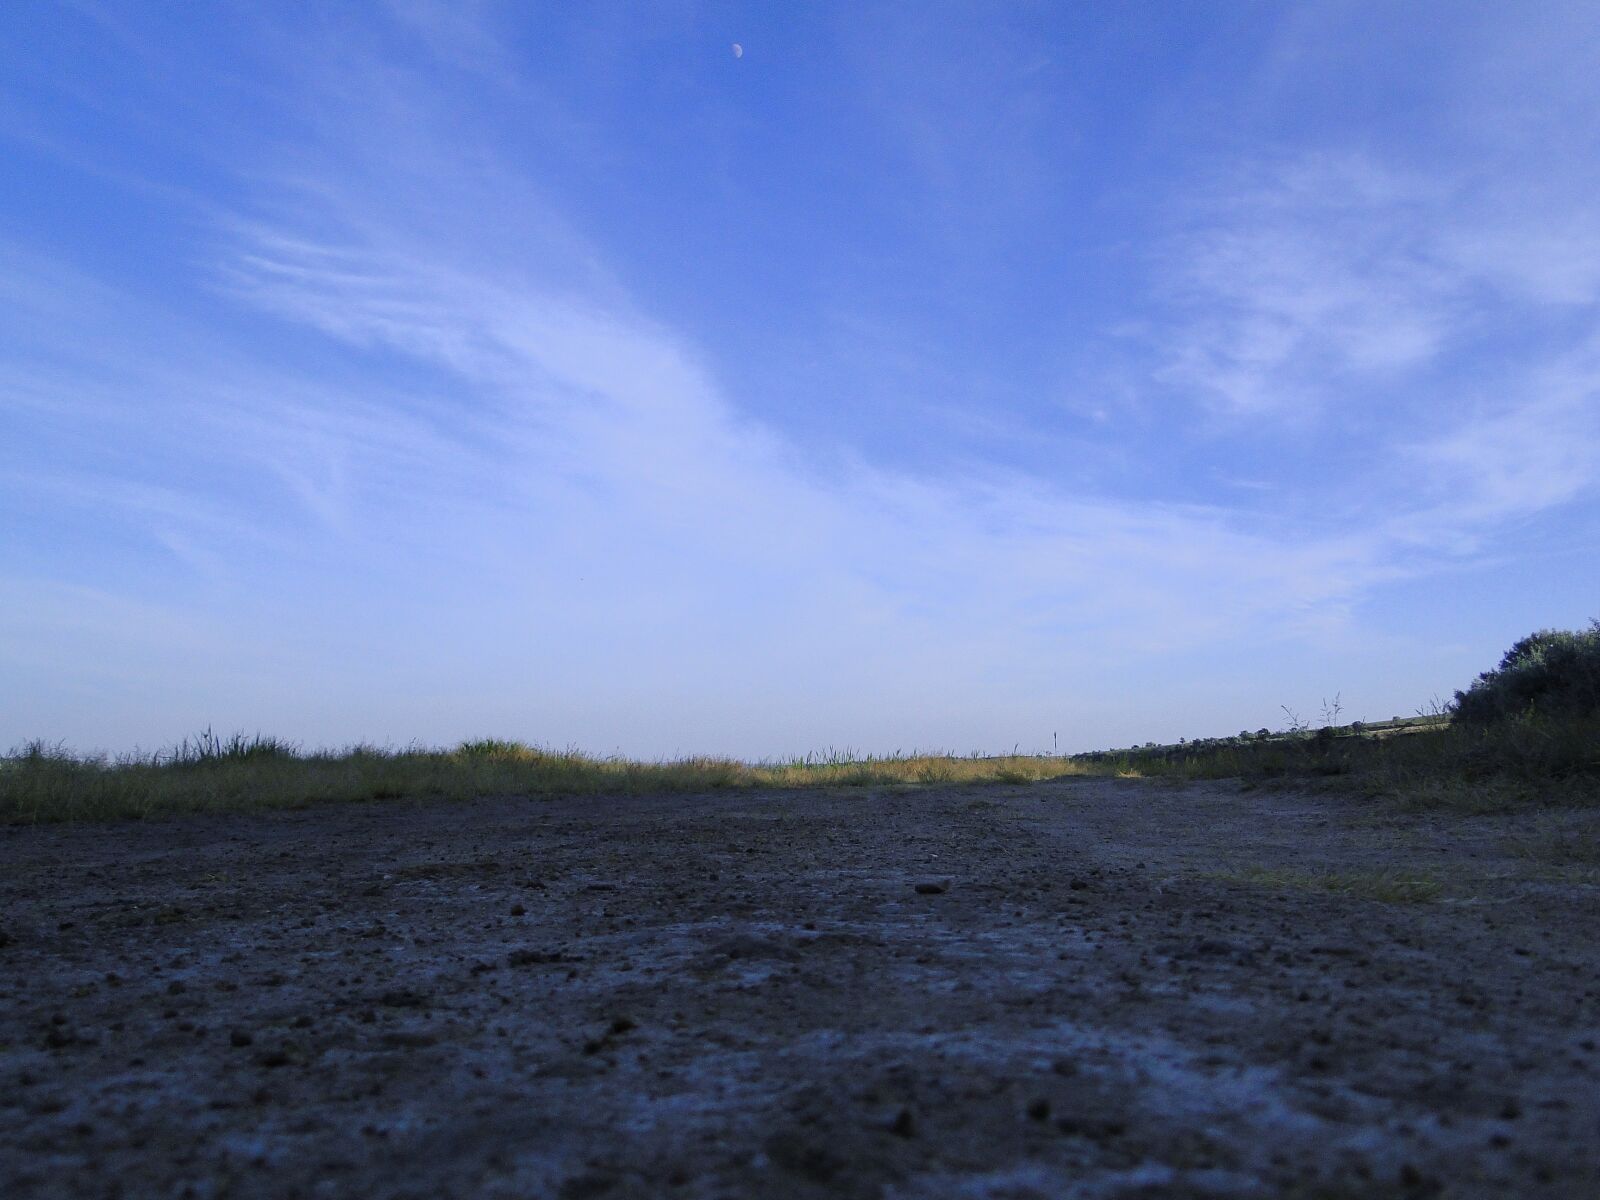 Sony Cyber-shot DSC-HX1 sample photo. Landscape, sky, road photography